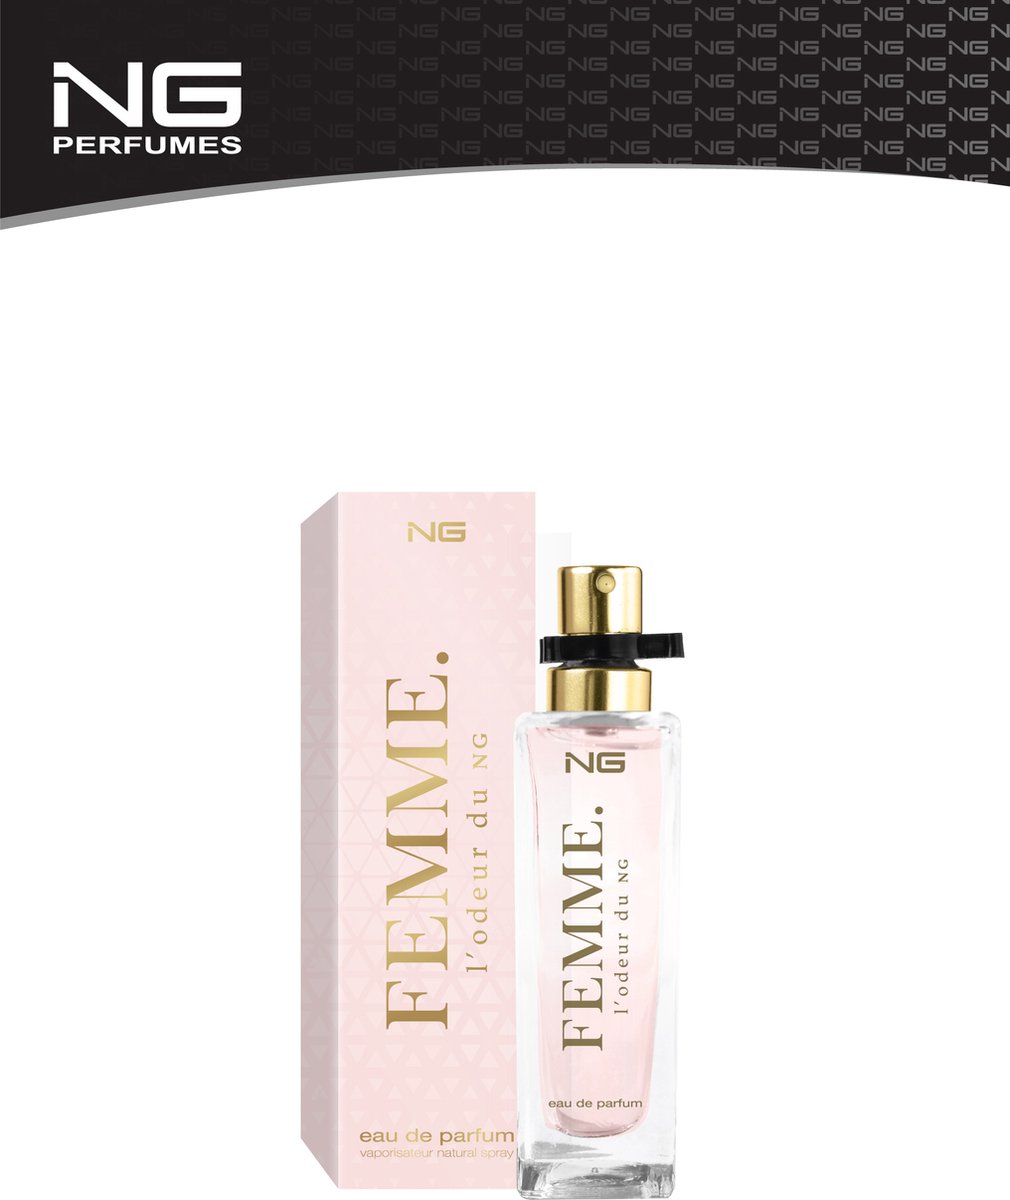 Next Generation - Eau de Parfum - 15ml - Femme L’Odeur du NG Women